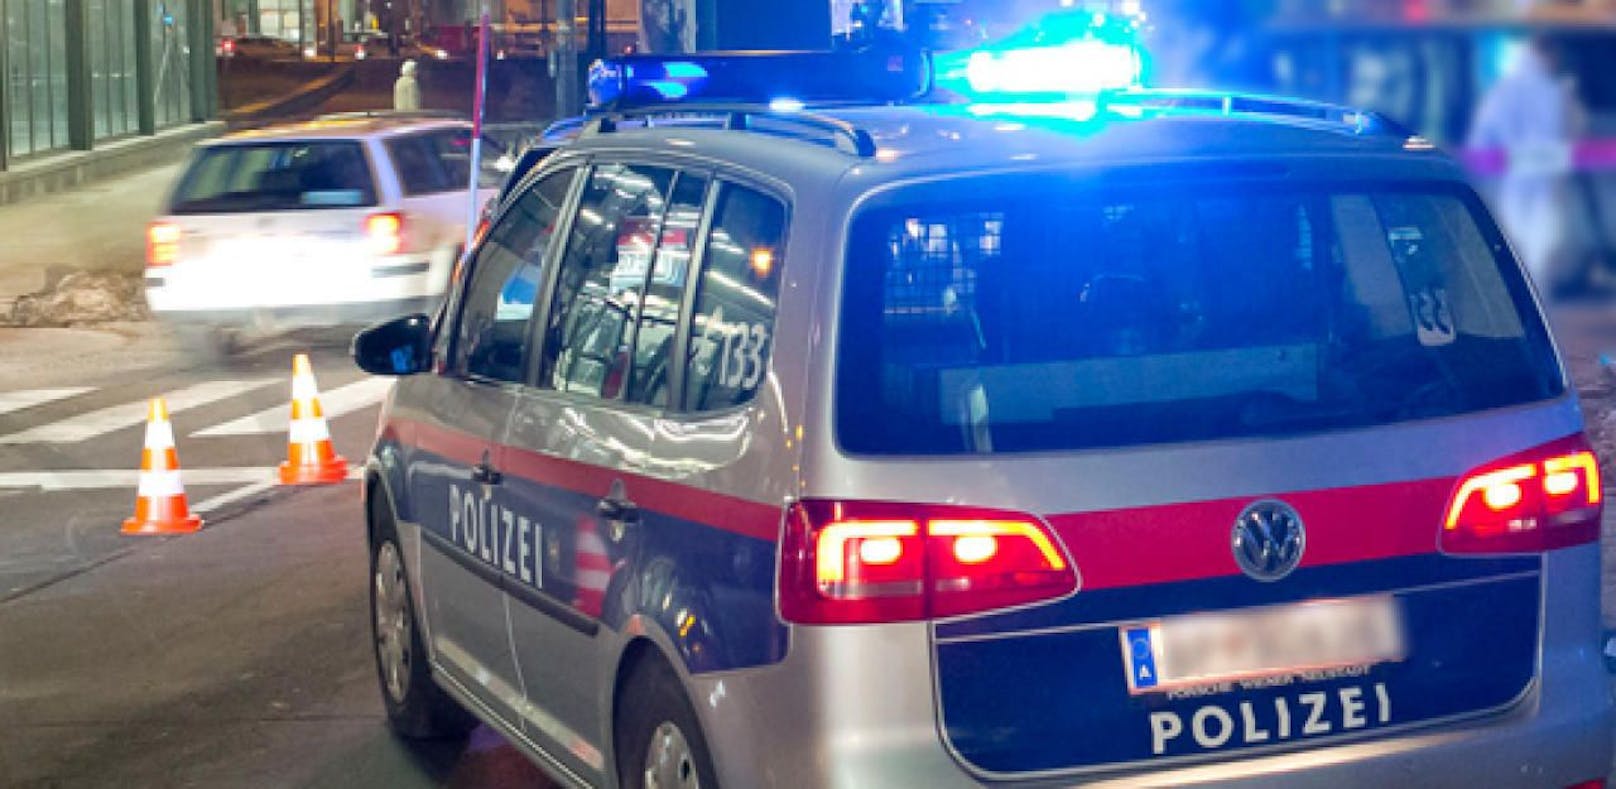 Bei einem Verkehrsunfall in Salzburg wurde eine 50-jährige Frau getötet. (Symbolfoto)